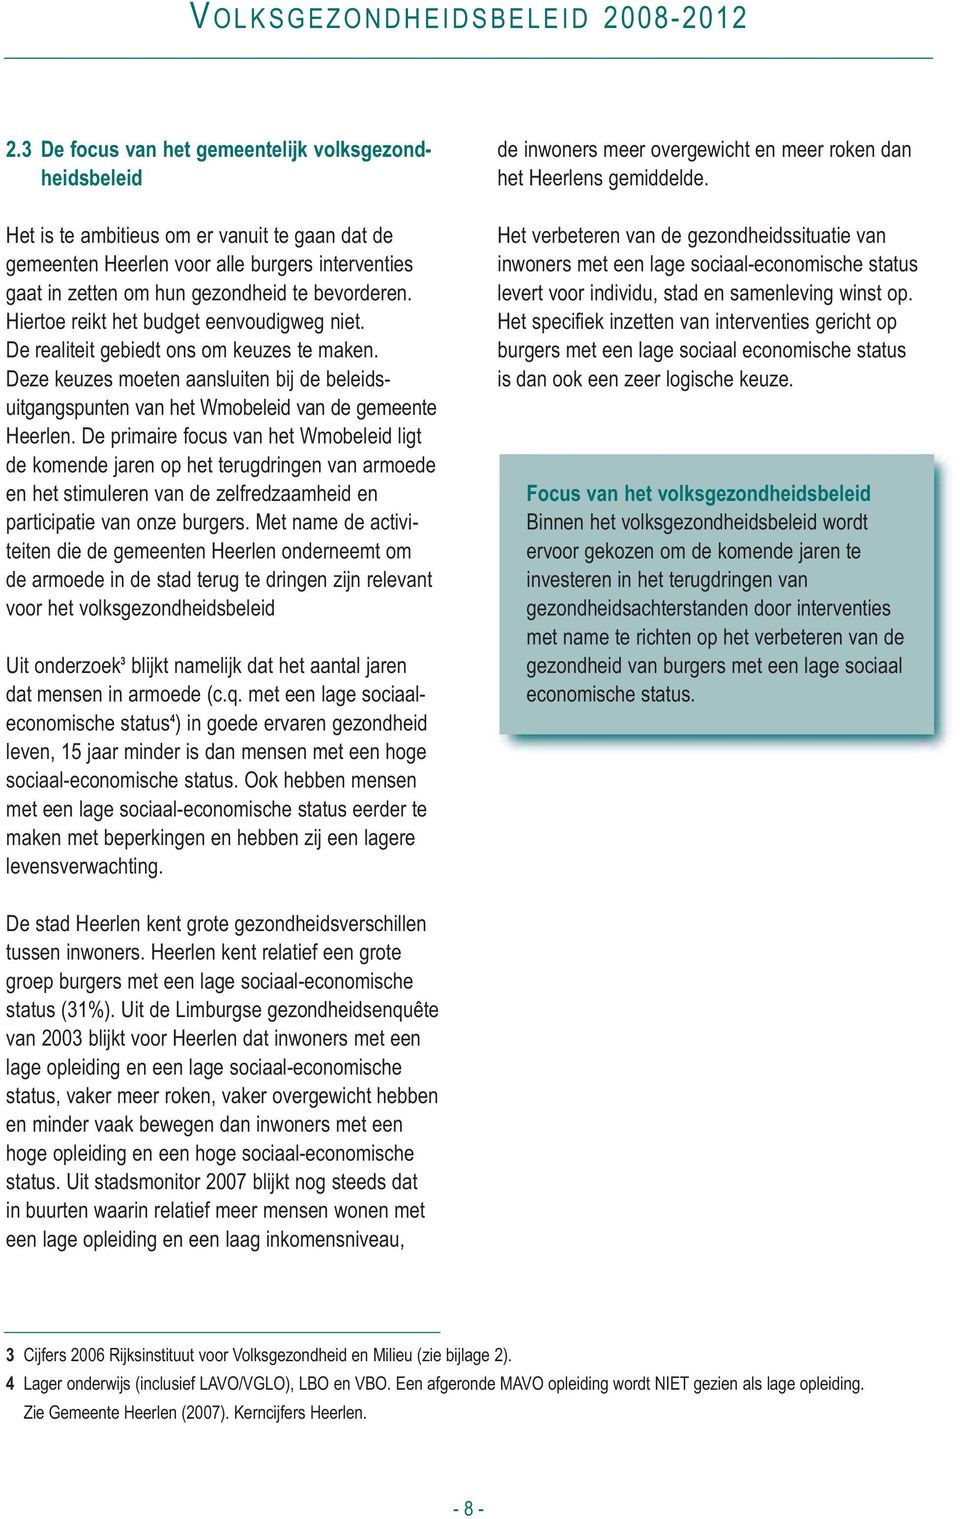 Deze keuzes moeten aansluiten bij de beleids - uitgangspunten van het Wmobeleid van de gemeente Heerlen.